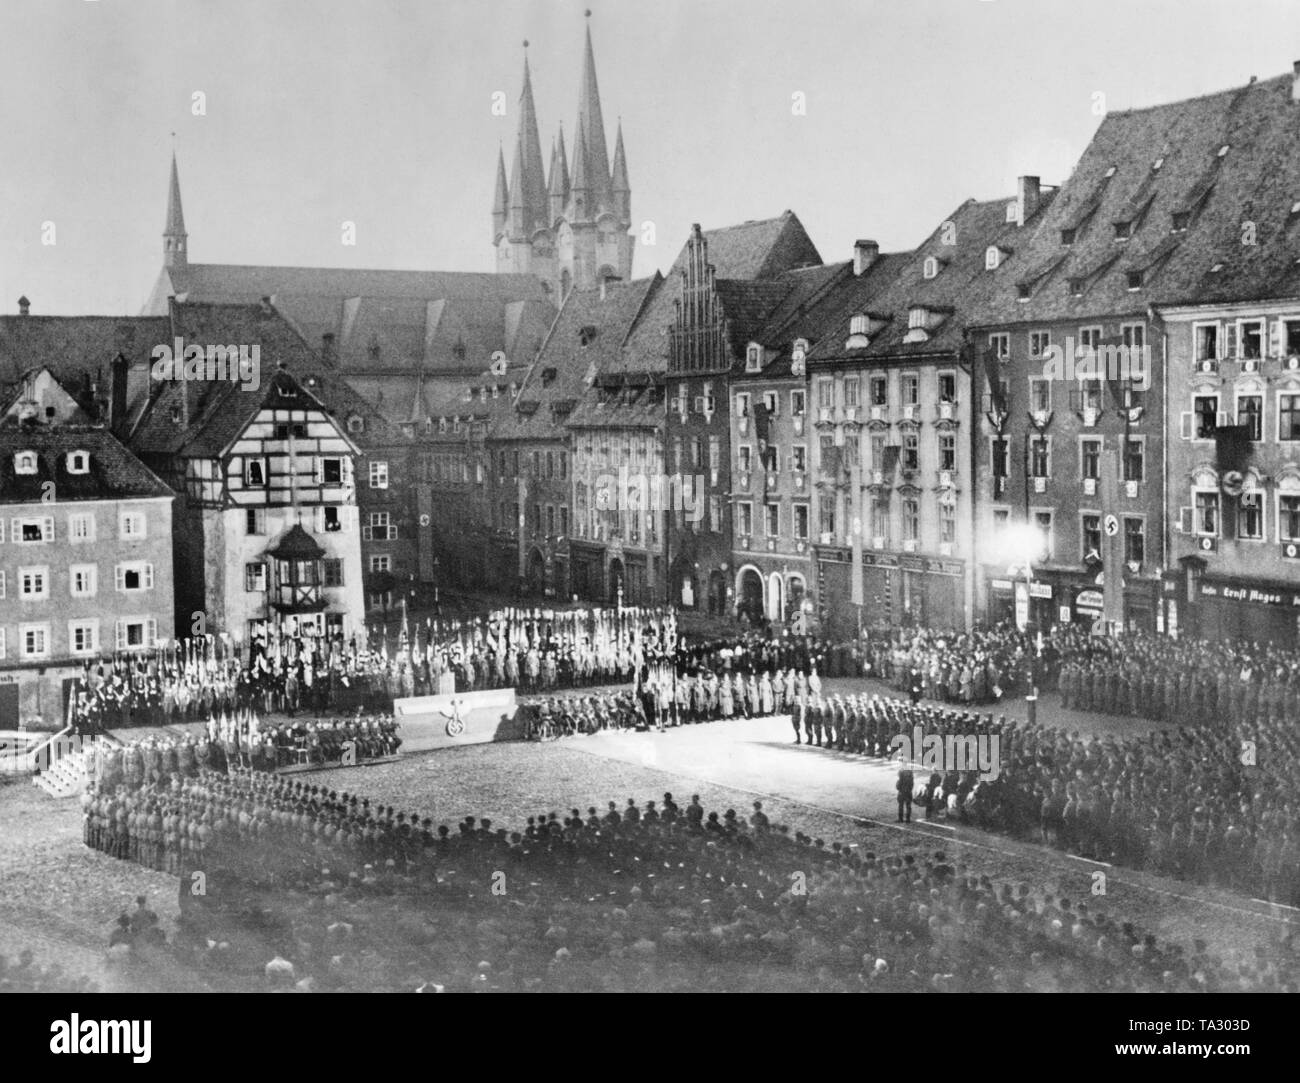 In occasione del quinto anniversario dell'annessione dei Sudeti al Reich tedesco, non vi è un rally presso la piazza del mercato in Cheb. Dopo l'accordo di Monaco di Baviera, il Sudetenland venne annessa al Reich tedesco. Foto Stock